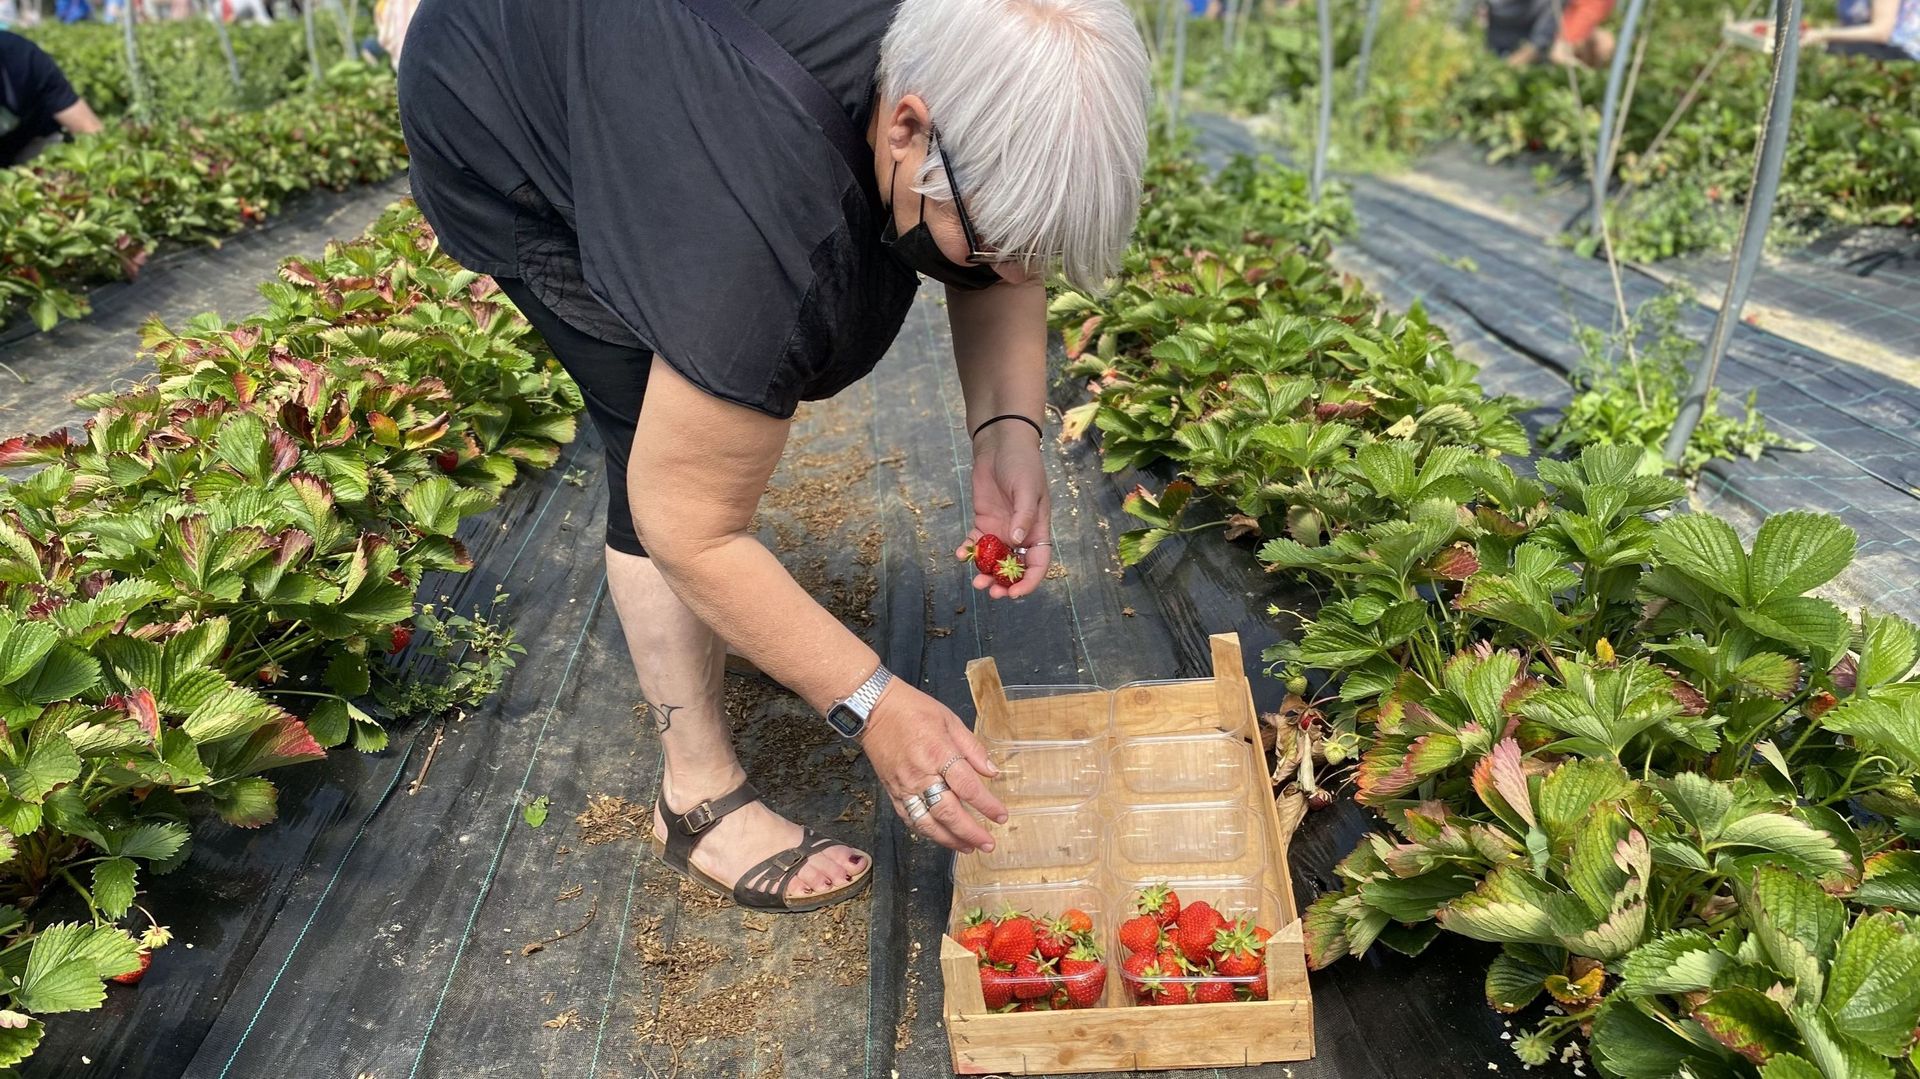 Devant l'abondance de fraises, les raviers se remplissent rapidement.